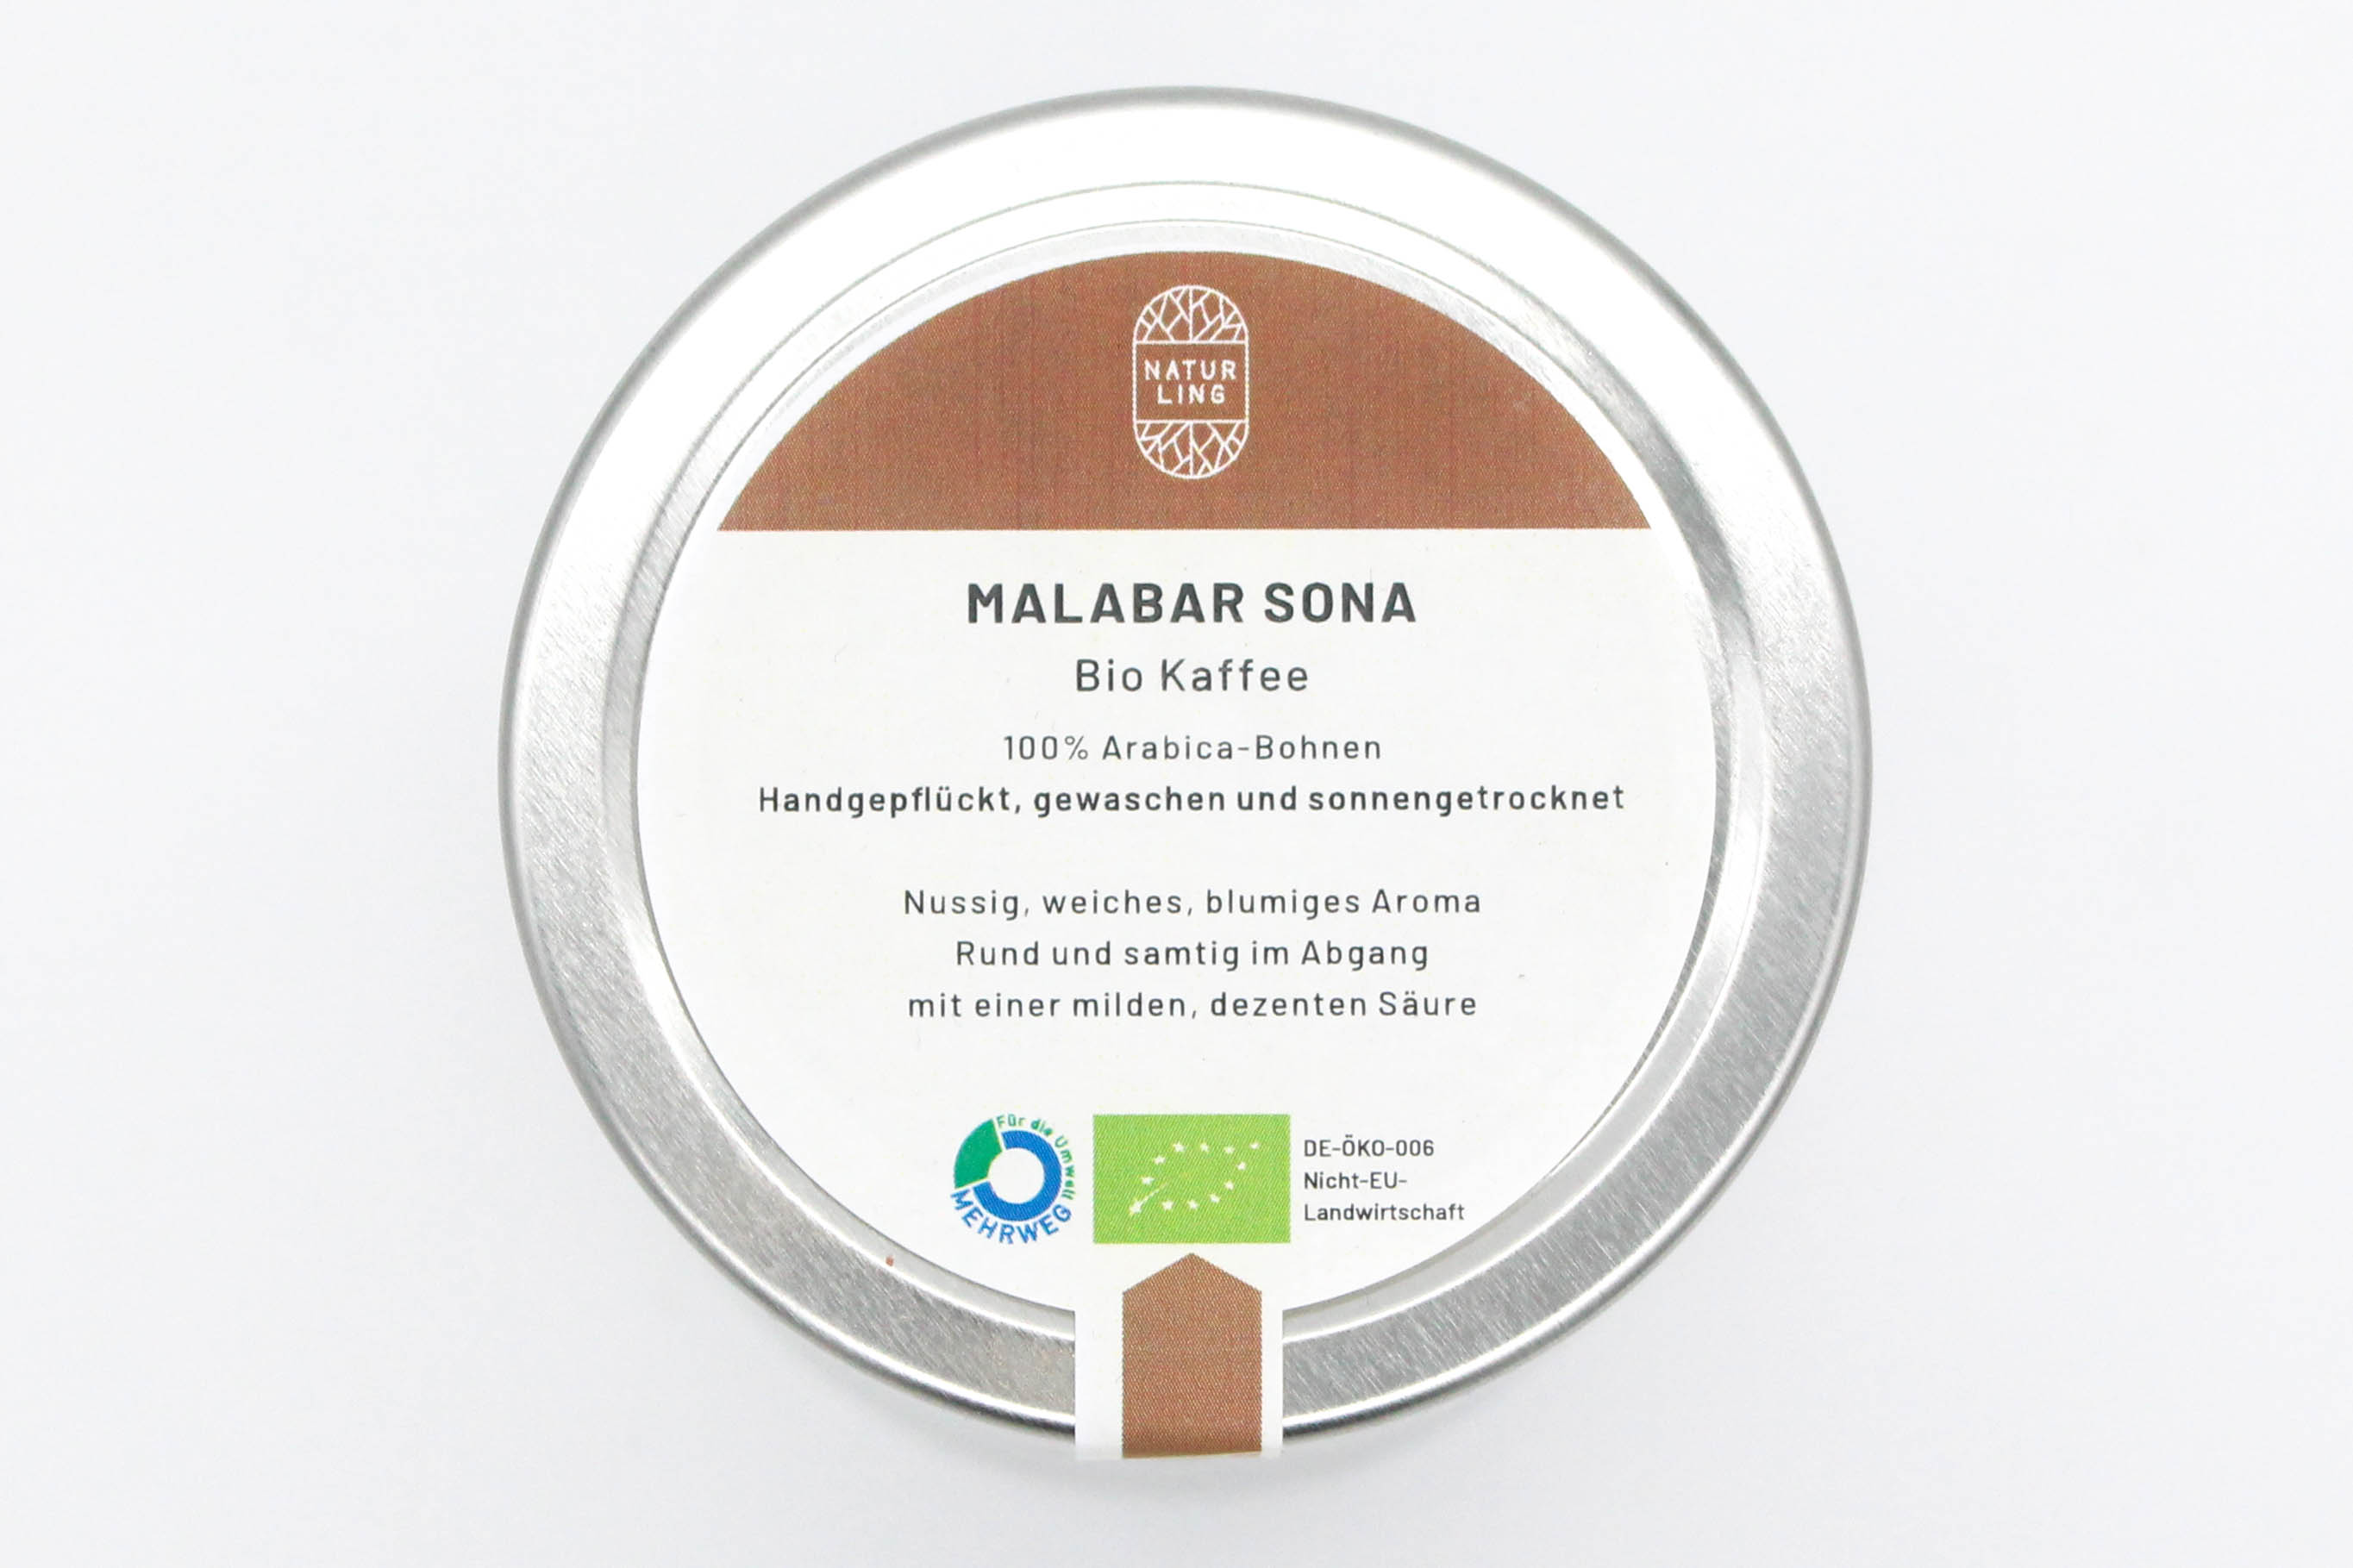 Bio Kaffee Malabar Sona